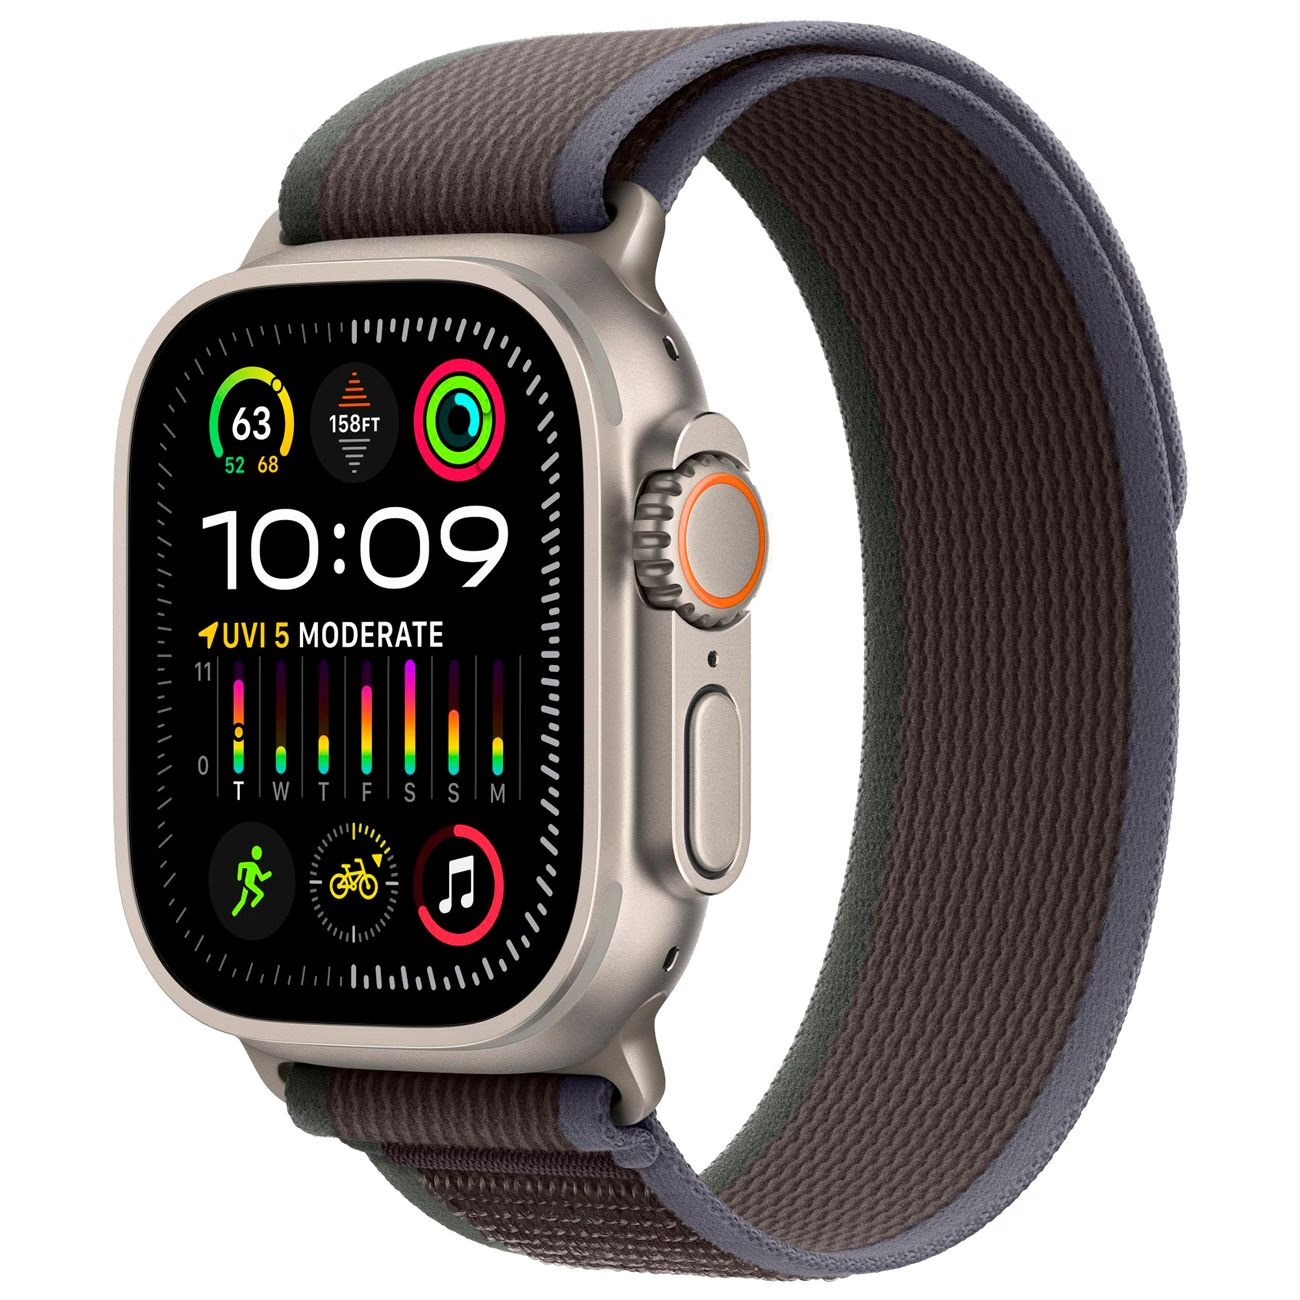 Купить смарт-часы apple watch ultra 2 trail loop blue/black Apple Watch Ultra 2 в официальном магазине Apple, Samsung, Xiaomi. iPixel.ru Купить, заказ, кредит, рассрочка, отзывы,  характеристики, цена,  фотографии, в подарок.